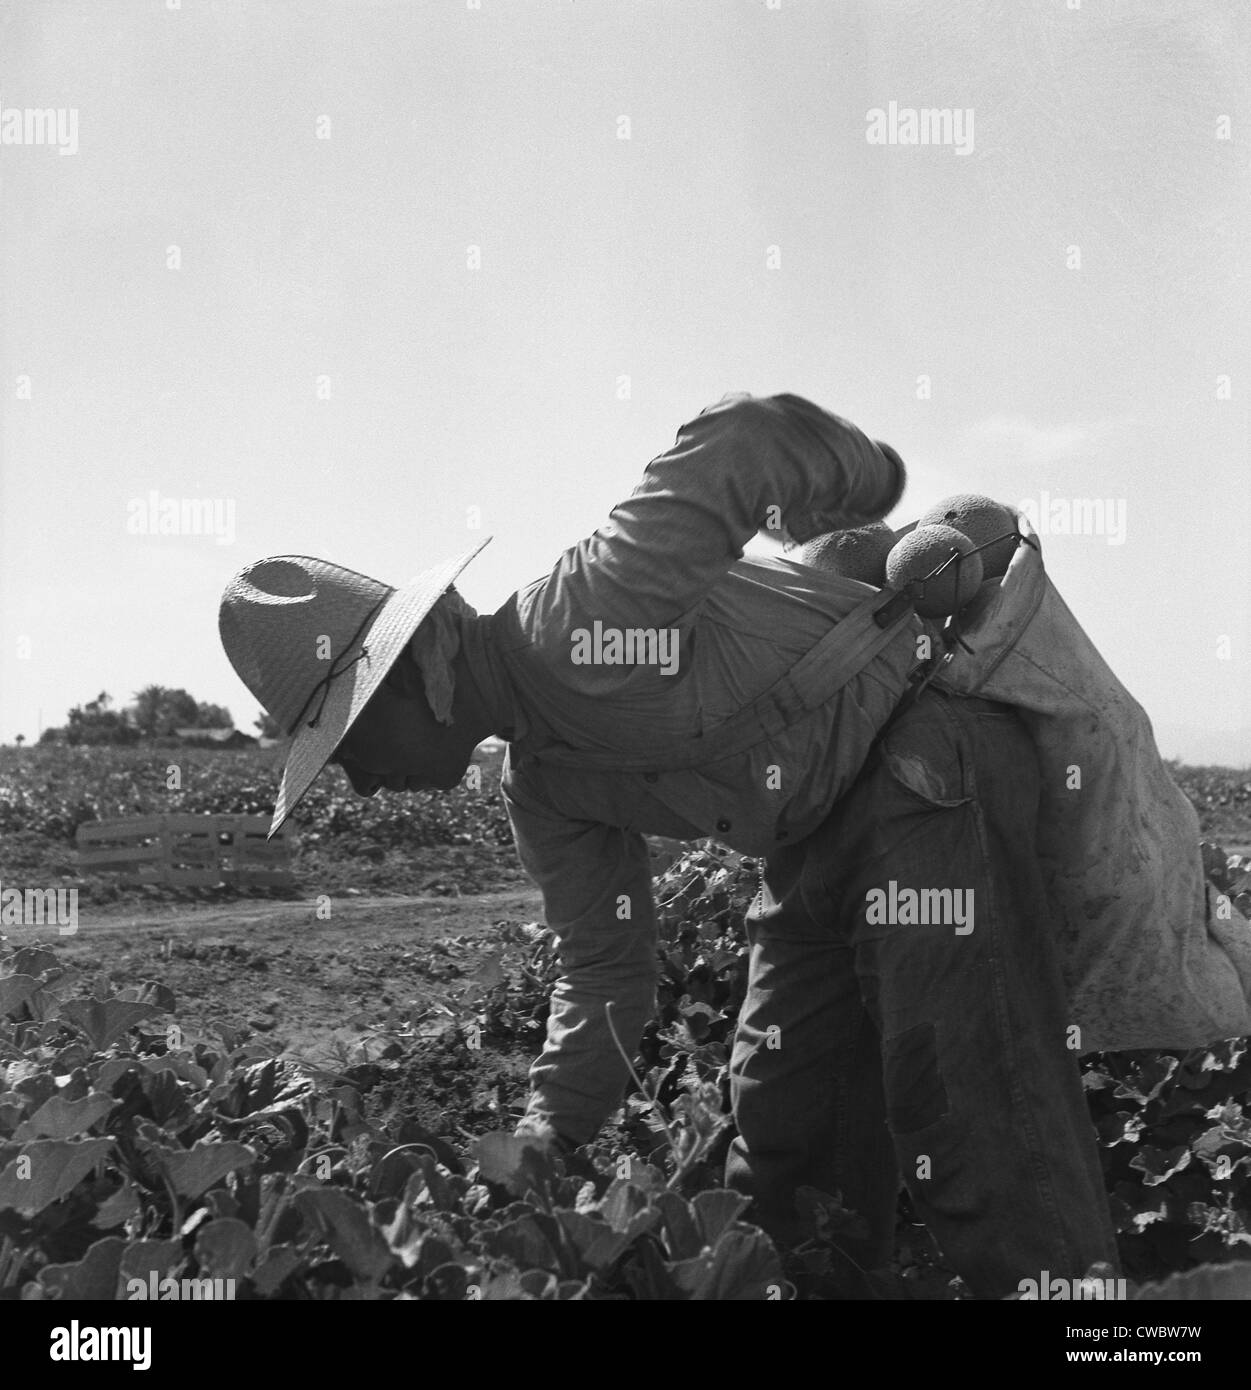 Mexikanisch-amerikanischen Knecht beugte sich über Kommissionierung Melonen im Imperial Valley, Kalifornien. Mai 1937 Foto von Dorothea Stockfoto